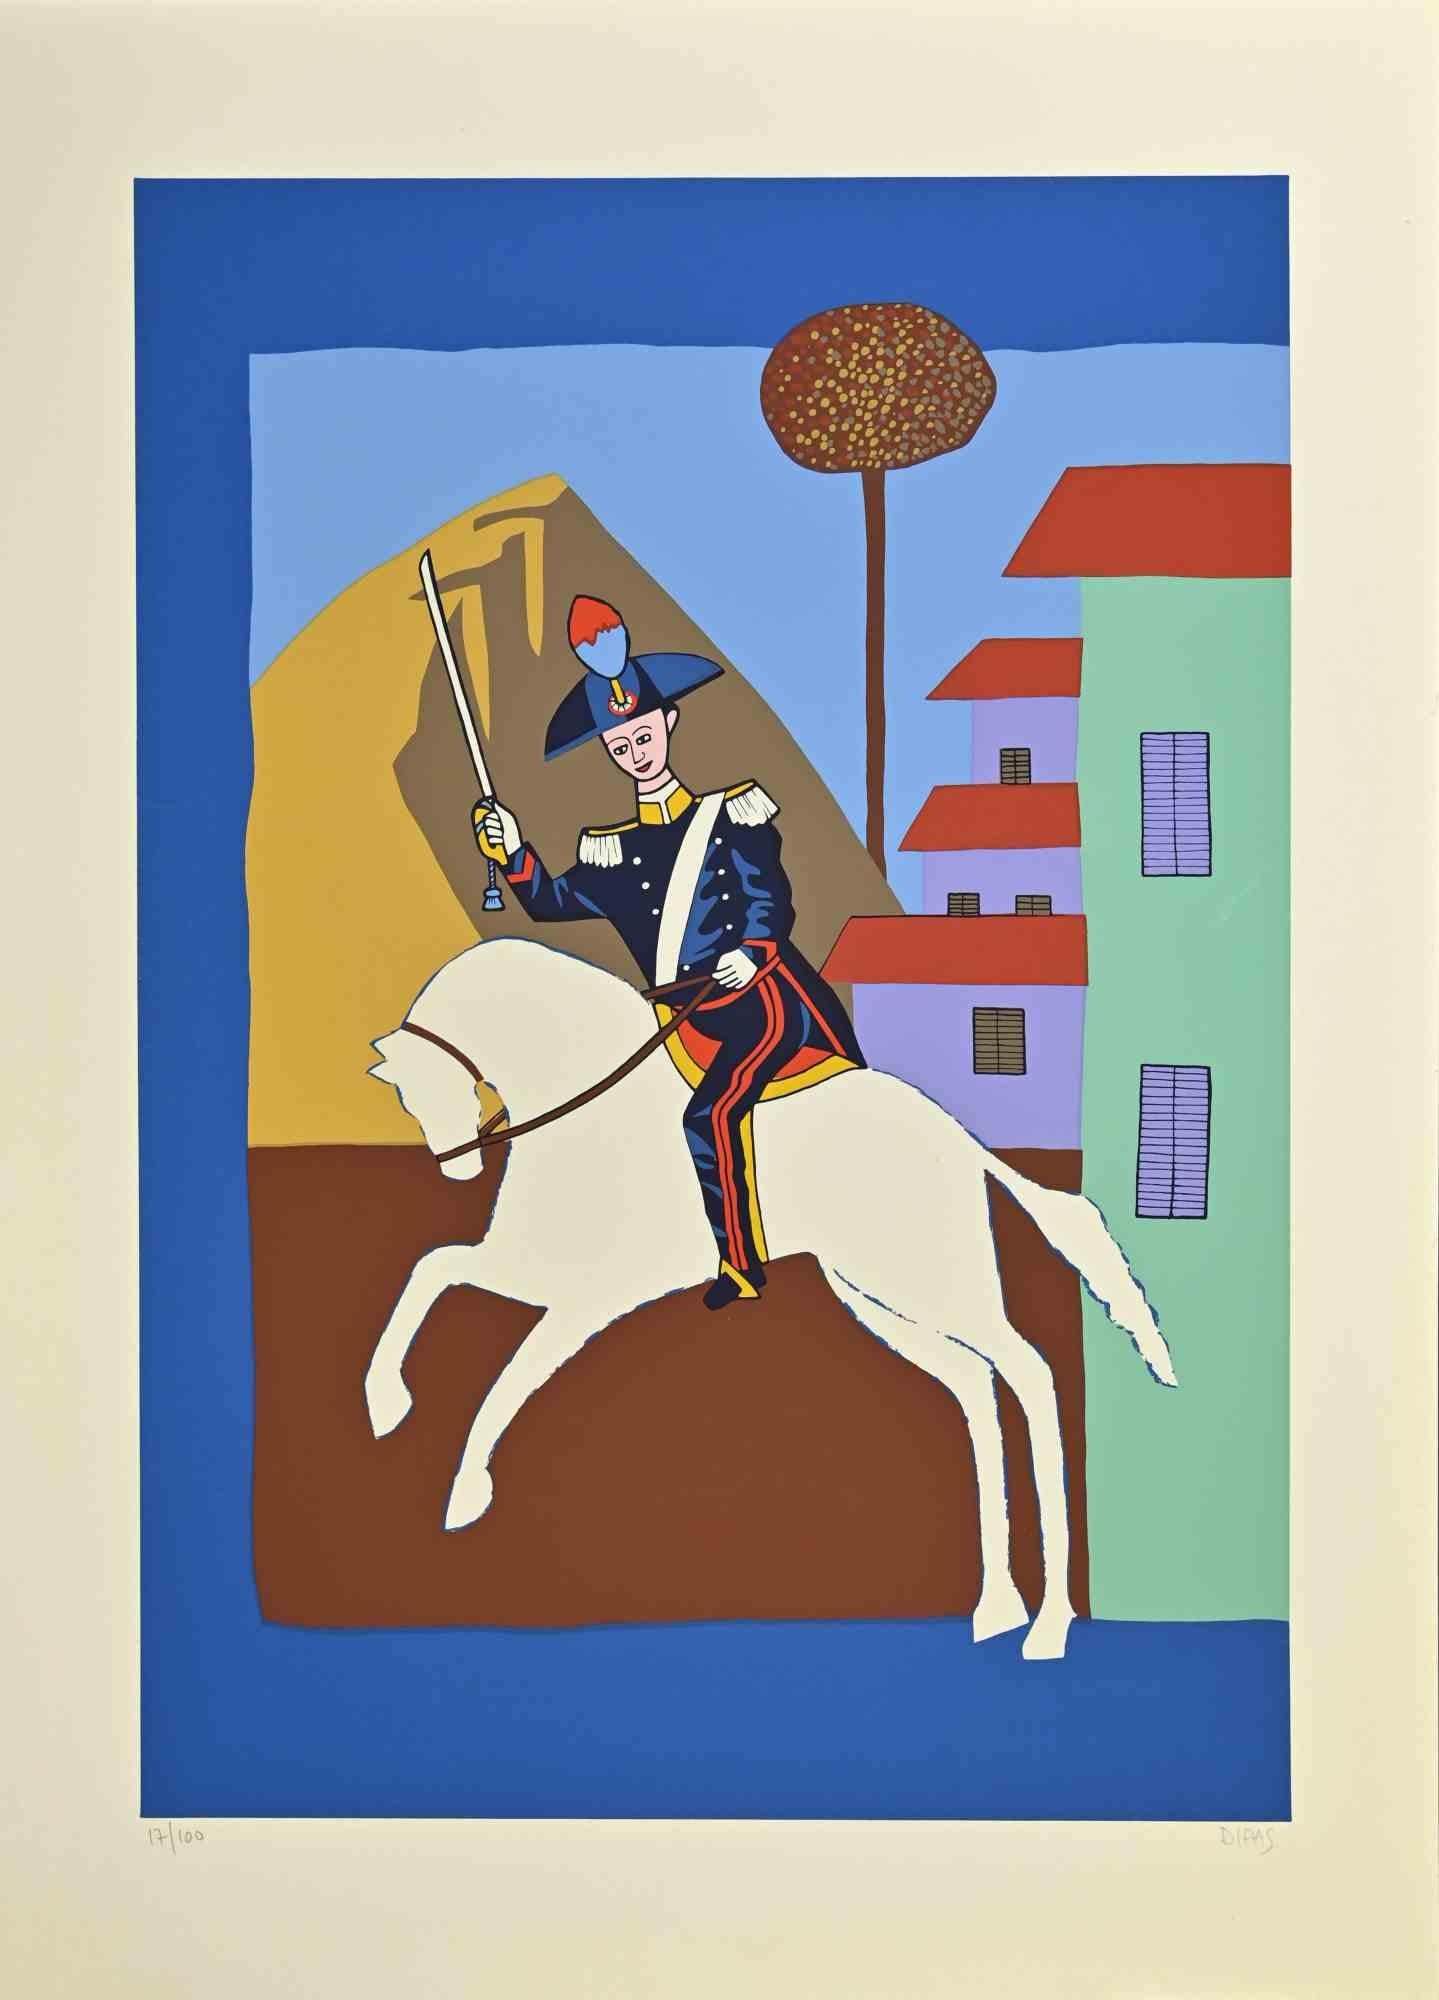 Le salut est une œuvre d'art contemporain réalisée par l'artiste Dipas dans les années 1970.

Sérigraphie de couleurs mélangées.

Signé à la main dans la marge inférieure droite.

Numéroté dans la marge inférieure gauche.

Édition de 17/100.